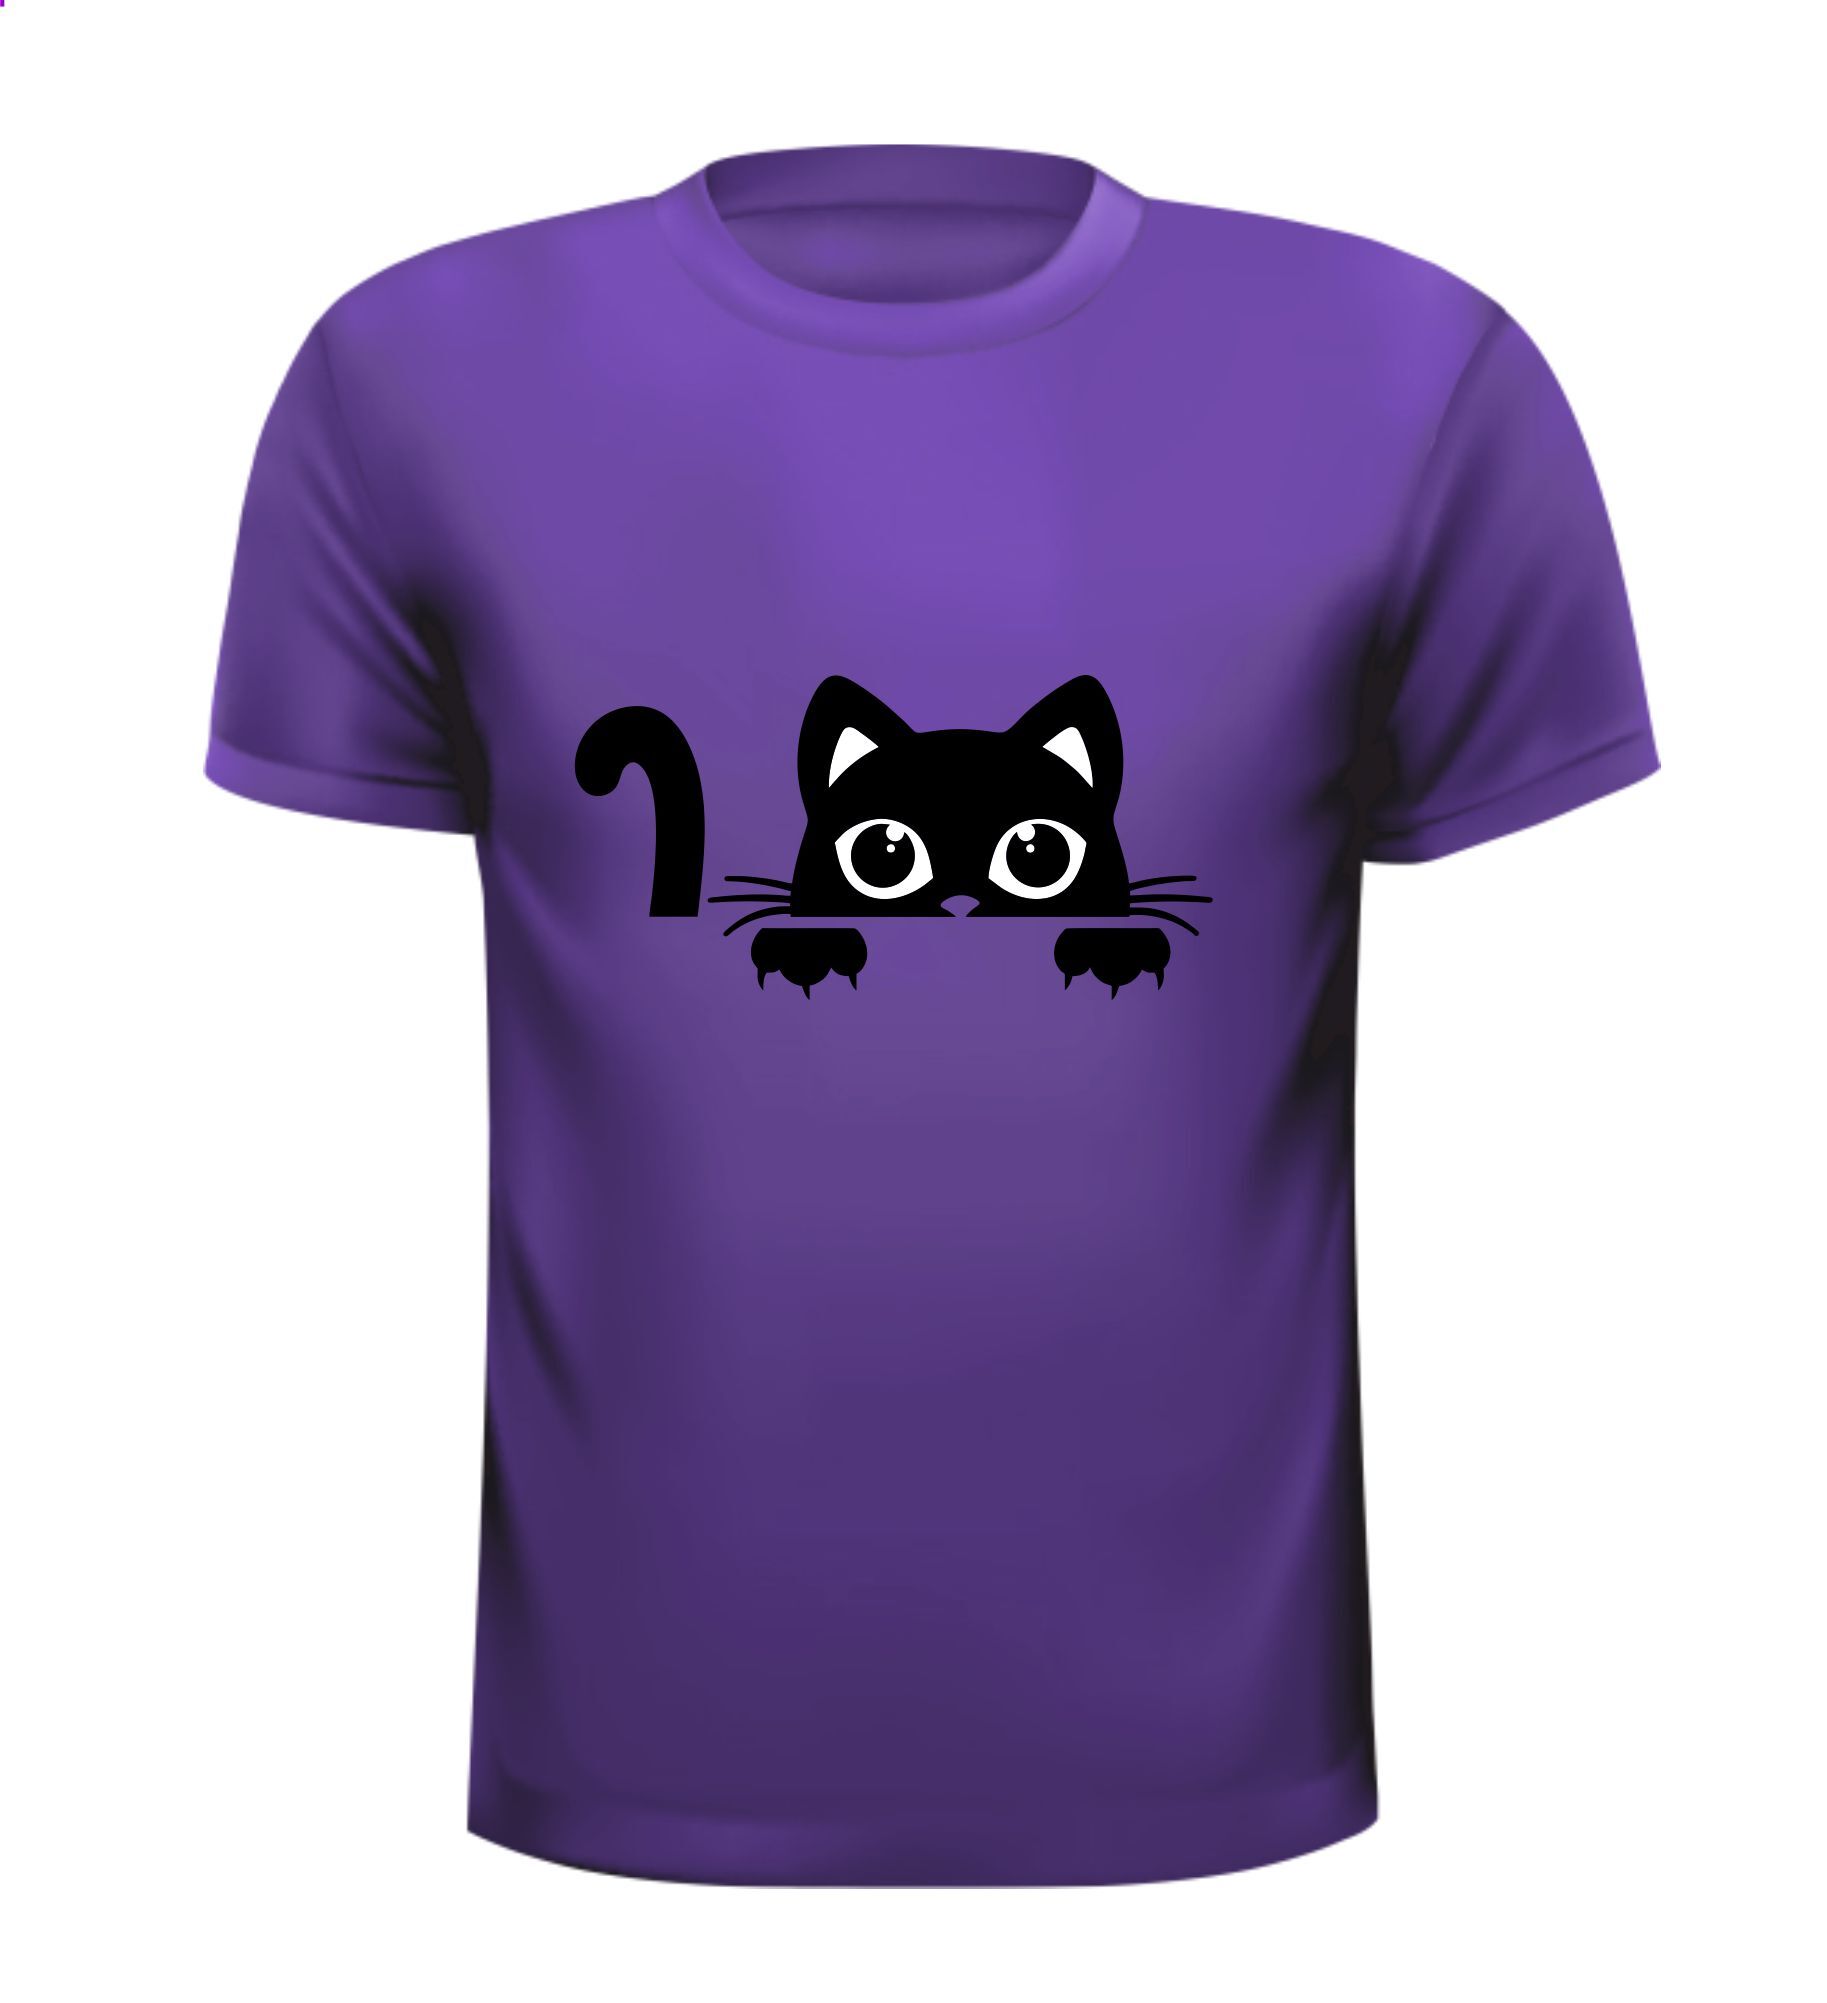 Shirtje voor katten liefhebbers poezen liefhebbers nieuwsgierige kat